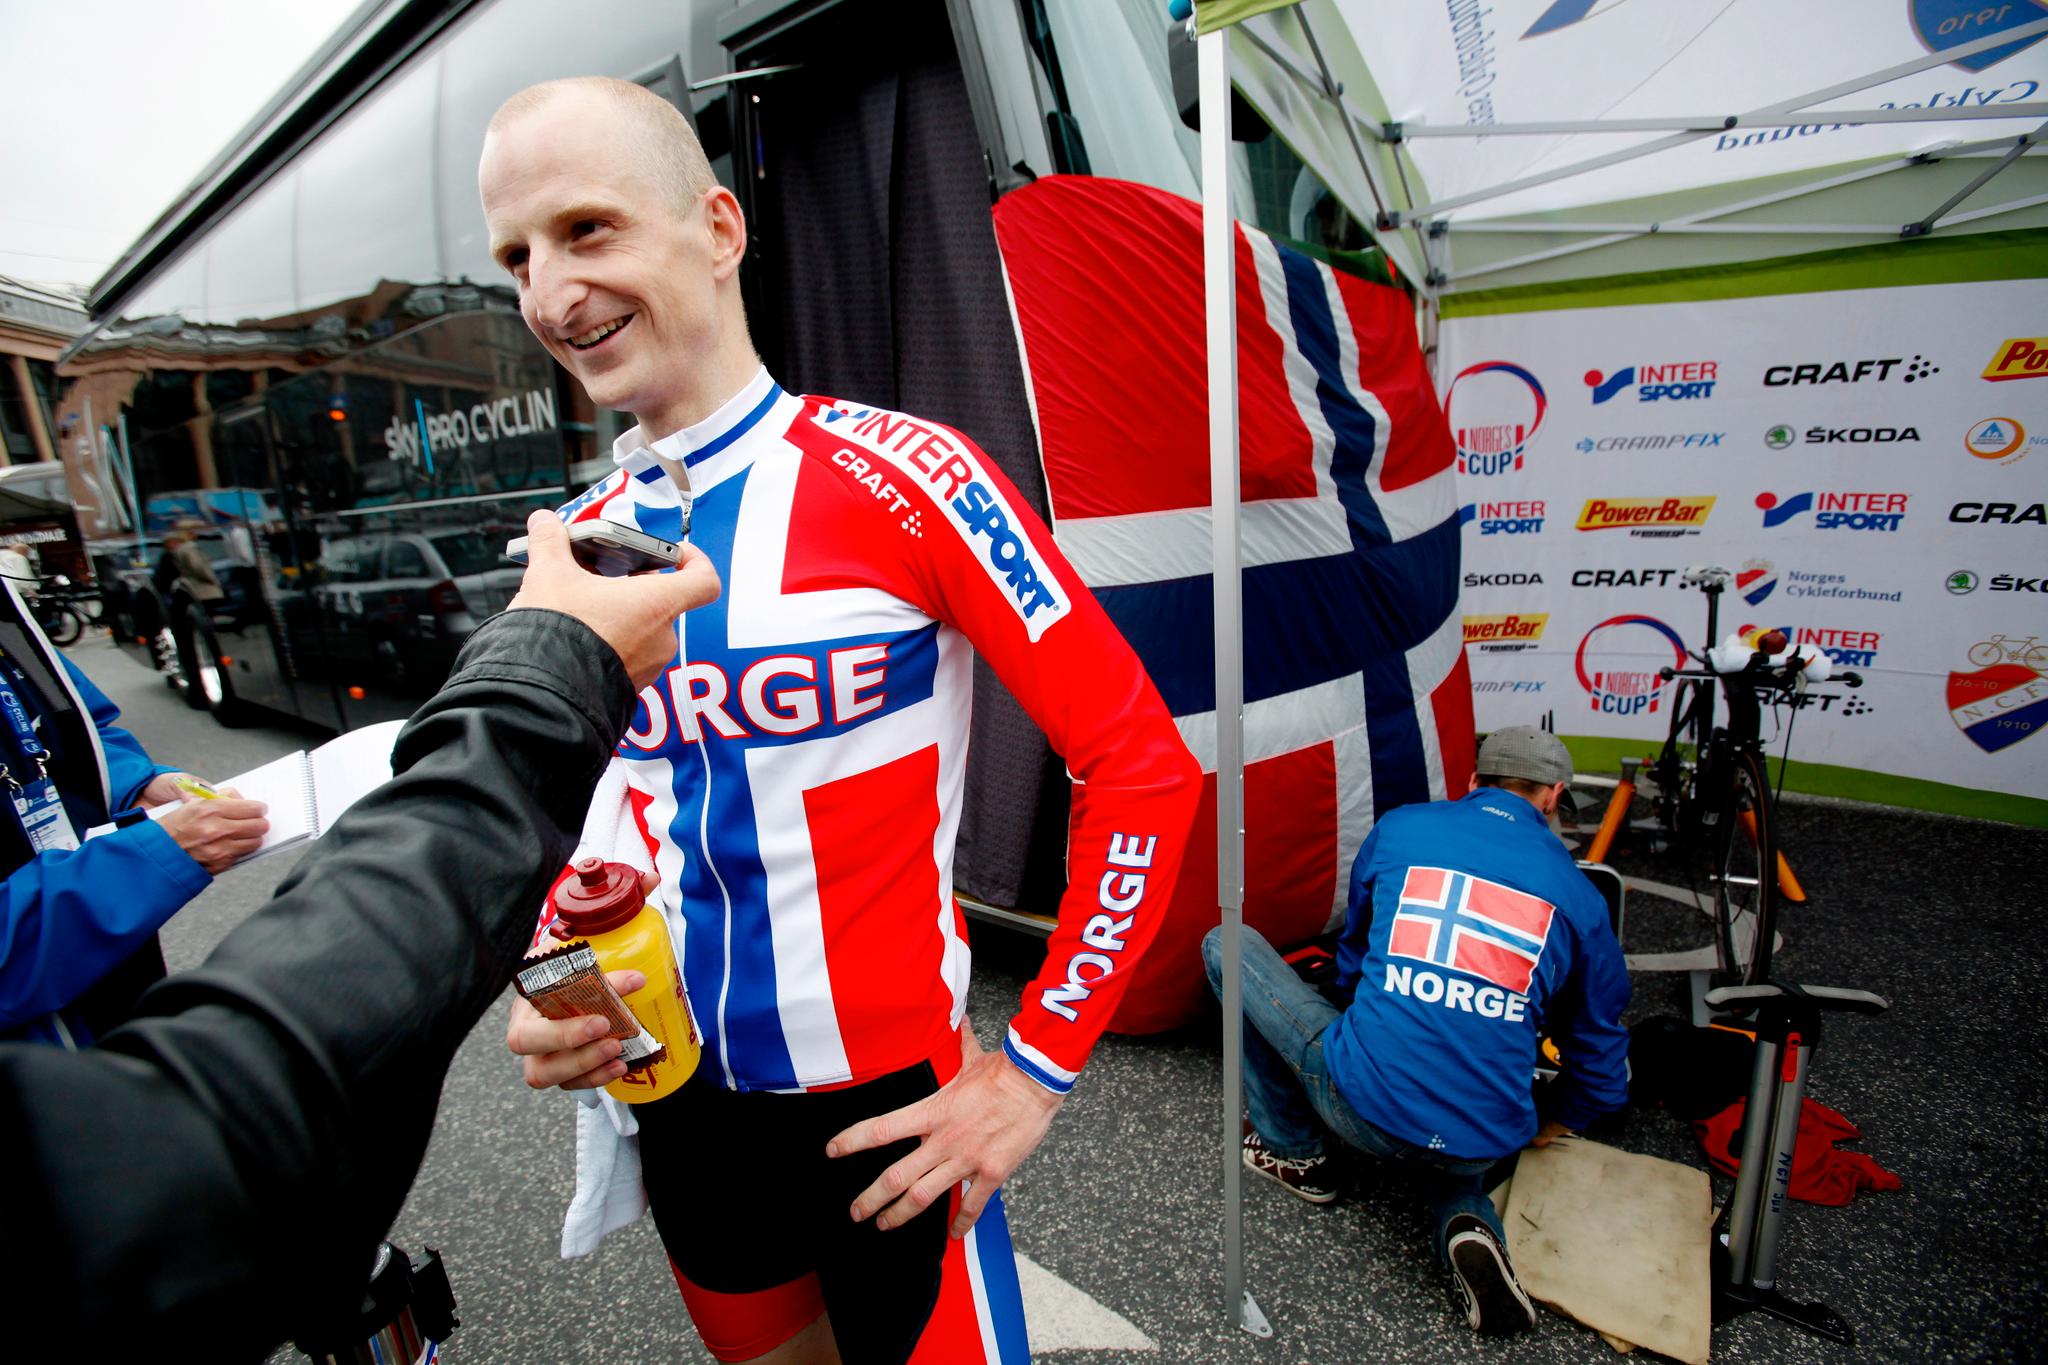 Joker-trener og tidligere rekordholder på 50 km, Reidar Borgersen, var svært imponert over gjennomsnittsfarten til Leknessund. 